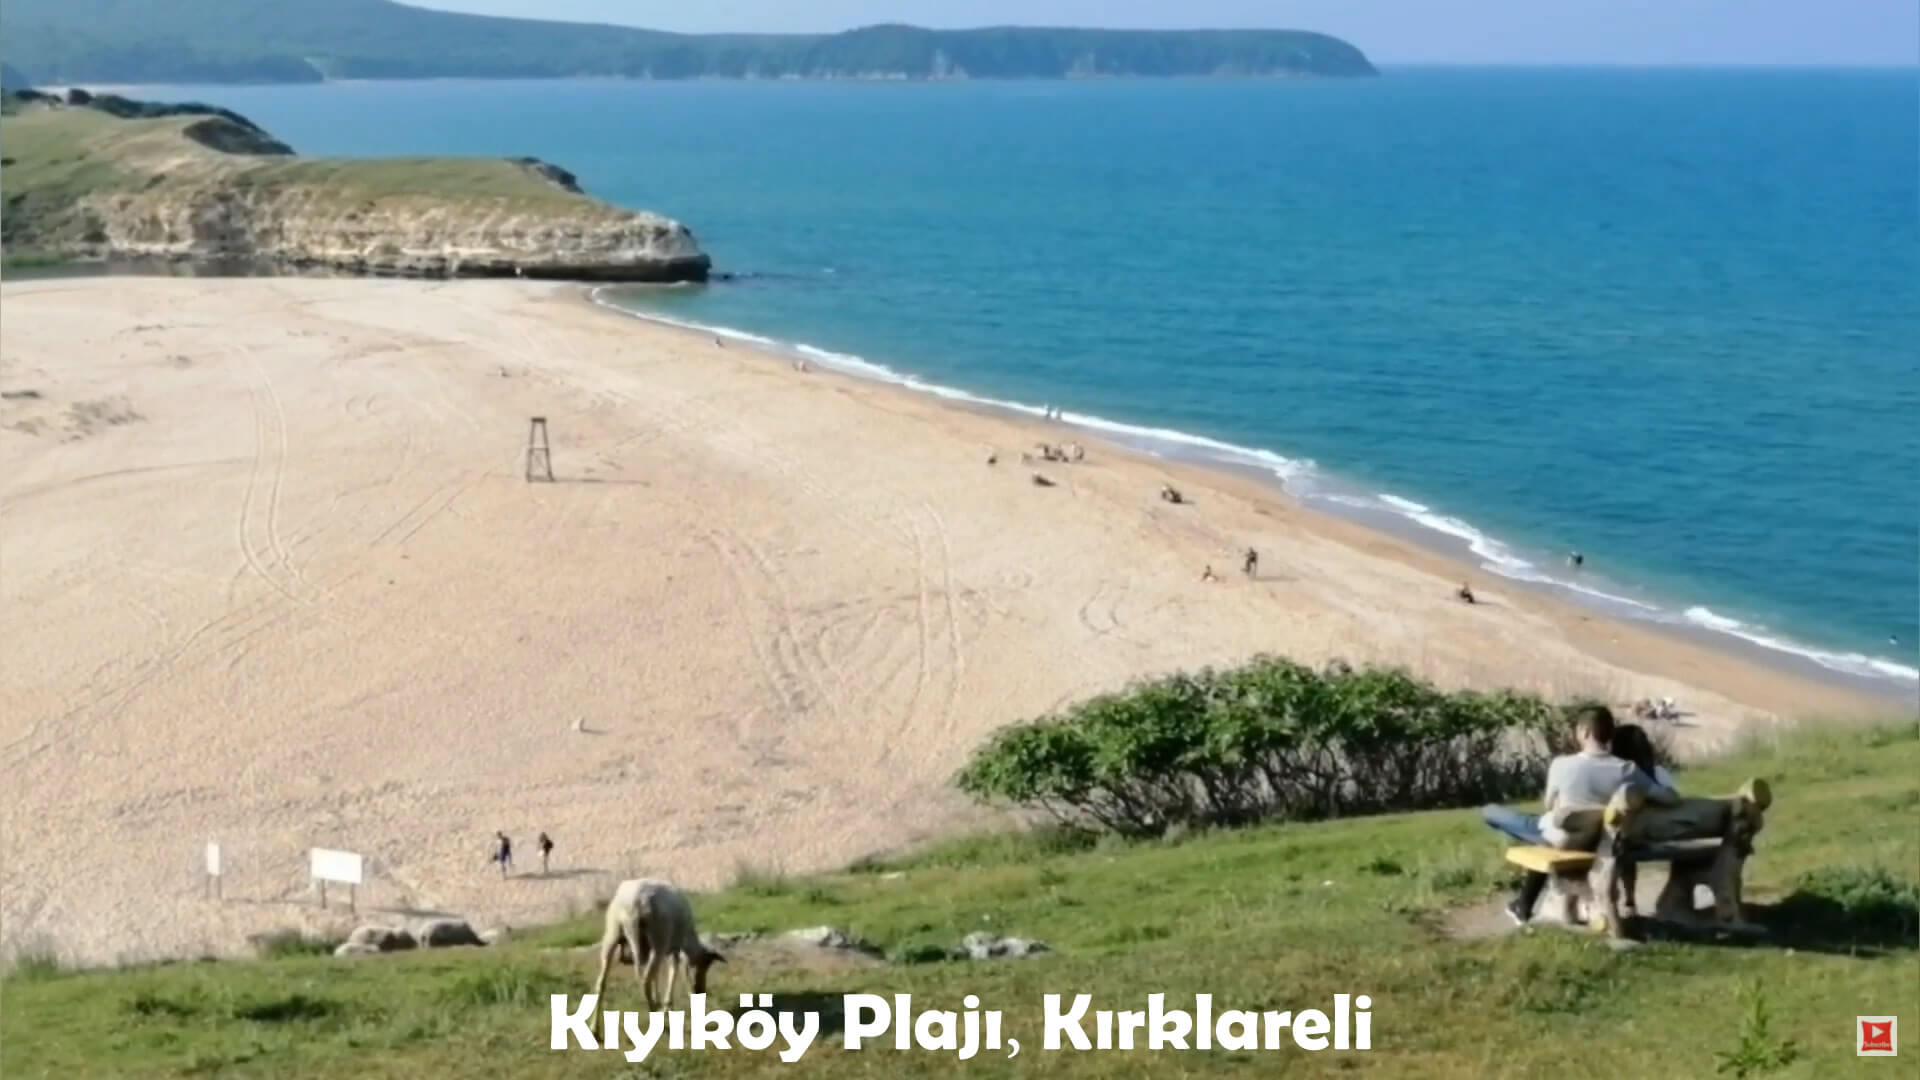 Kiyikoy Beach, Kirklareli